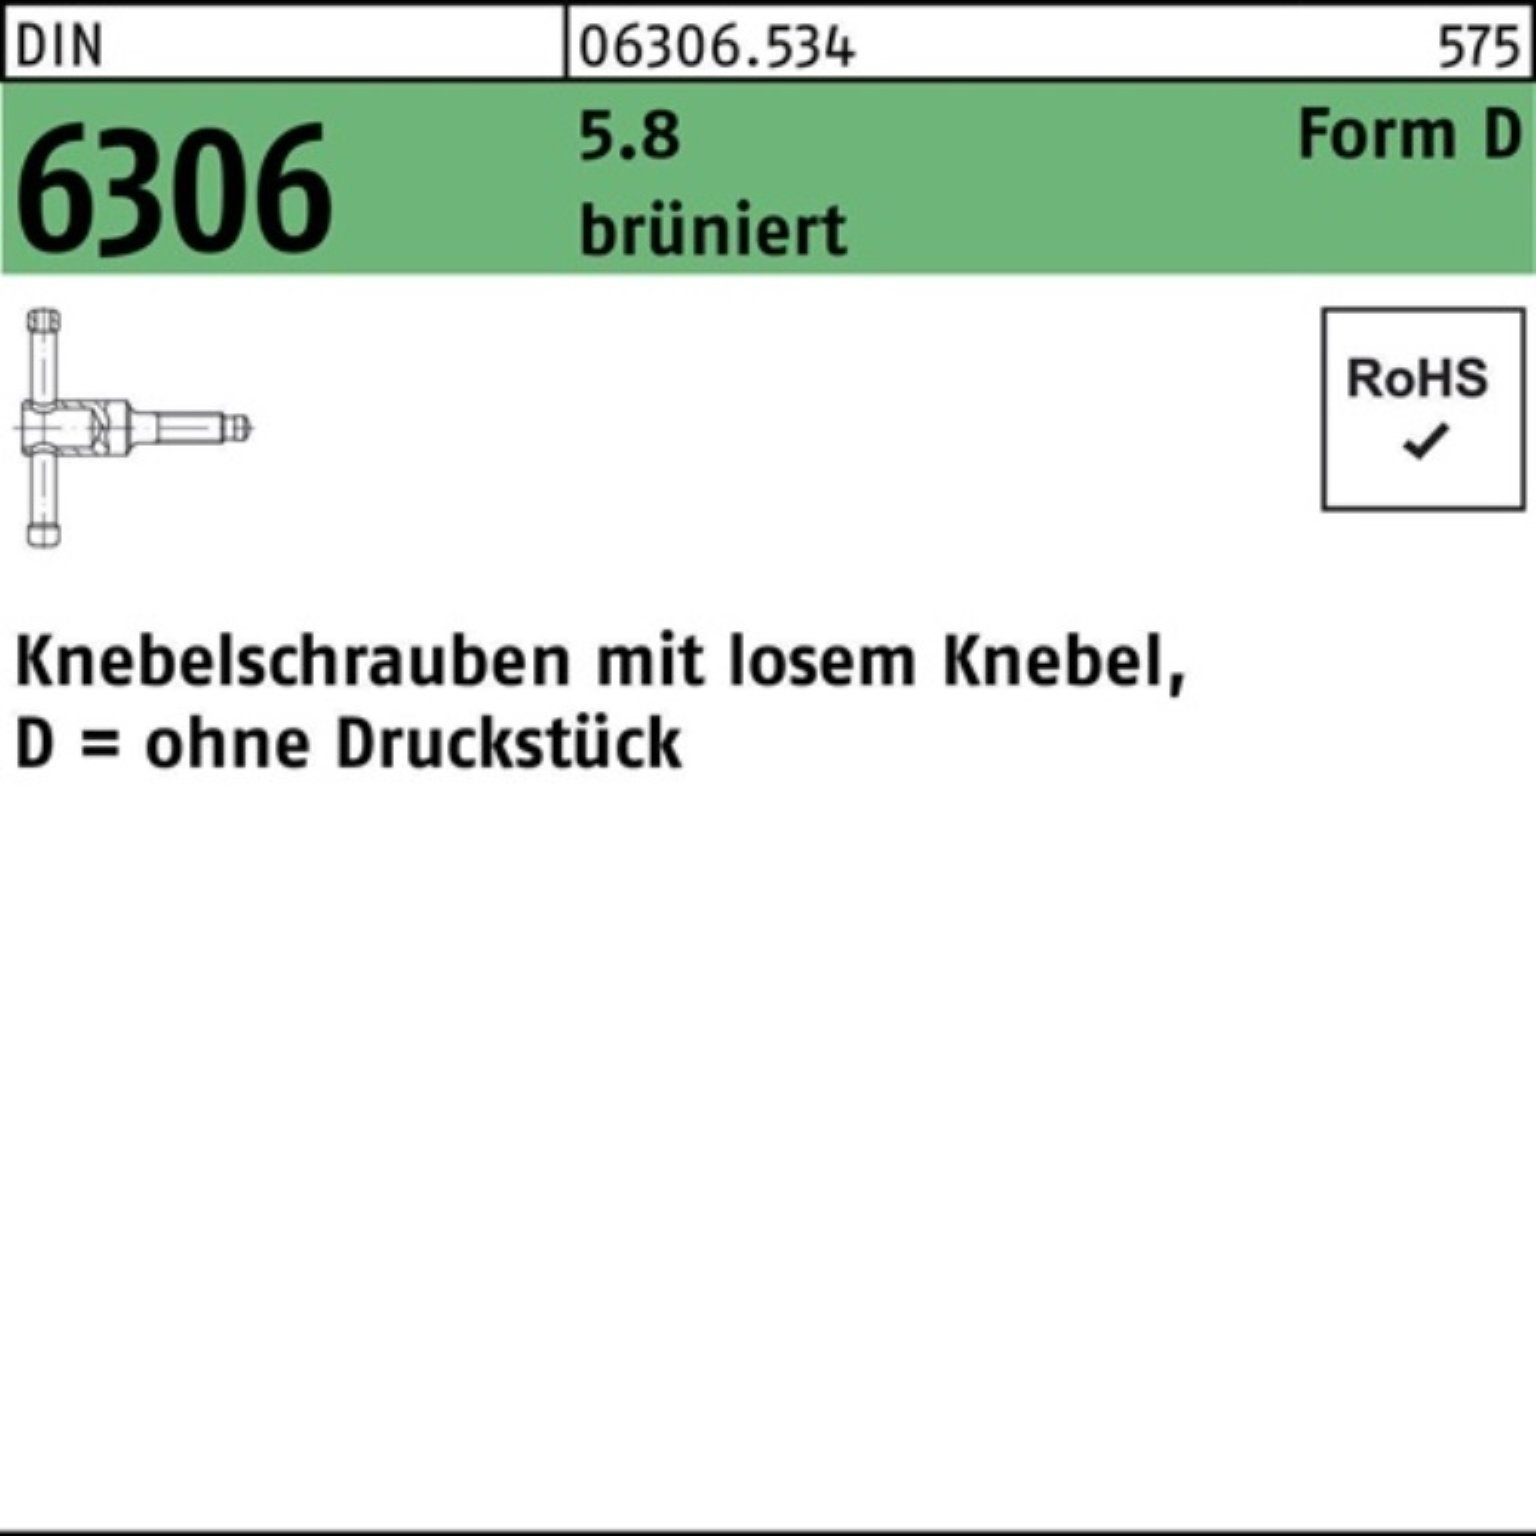 Reyher Schraube 100er Pack Knebelschraube DIN 6306 losen Knebel DM 12x 60 5.8 brünier